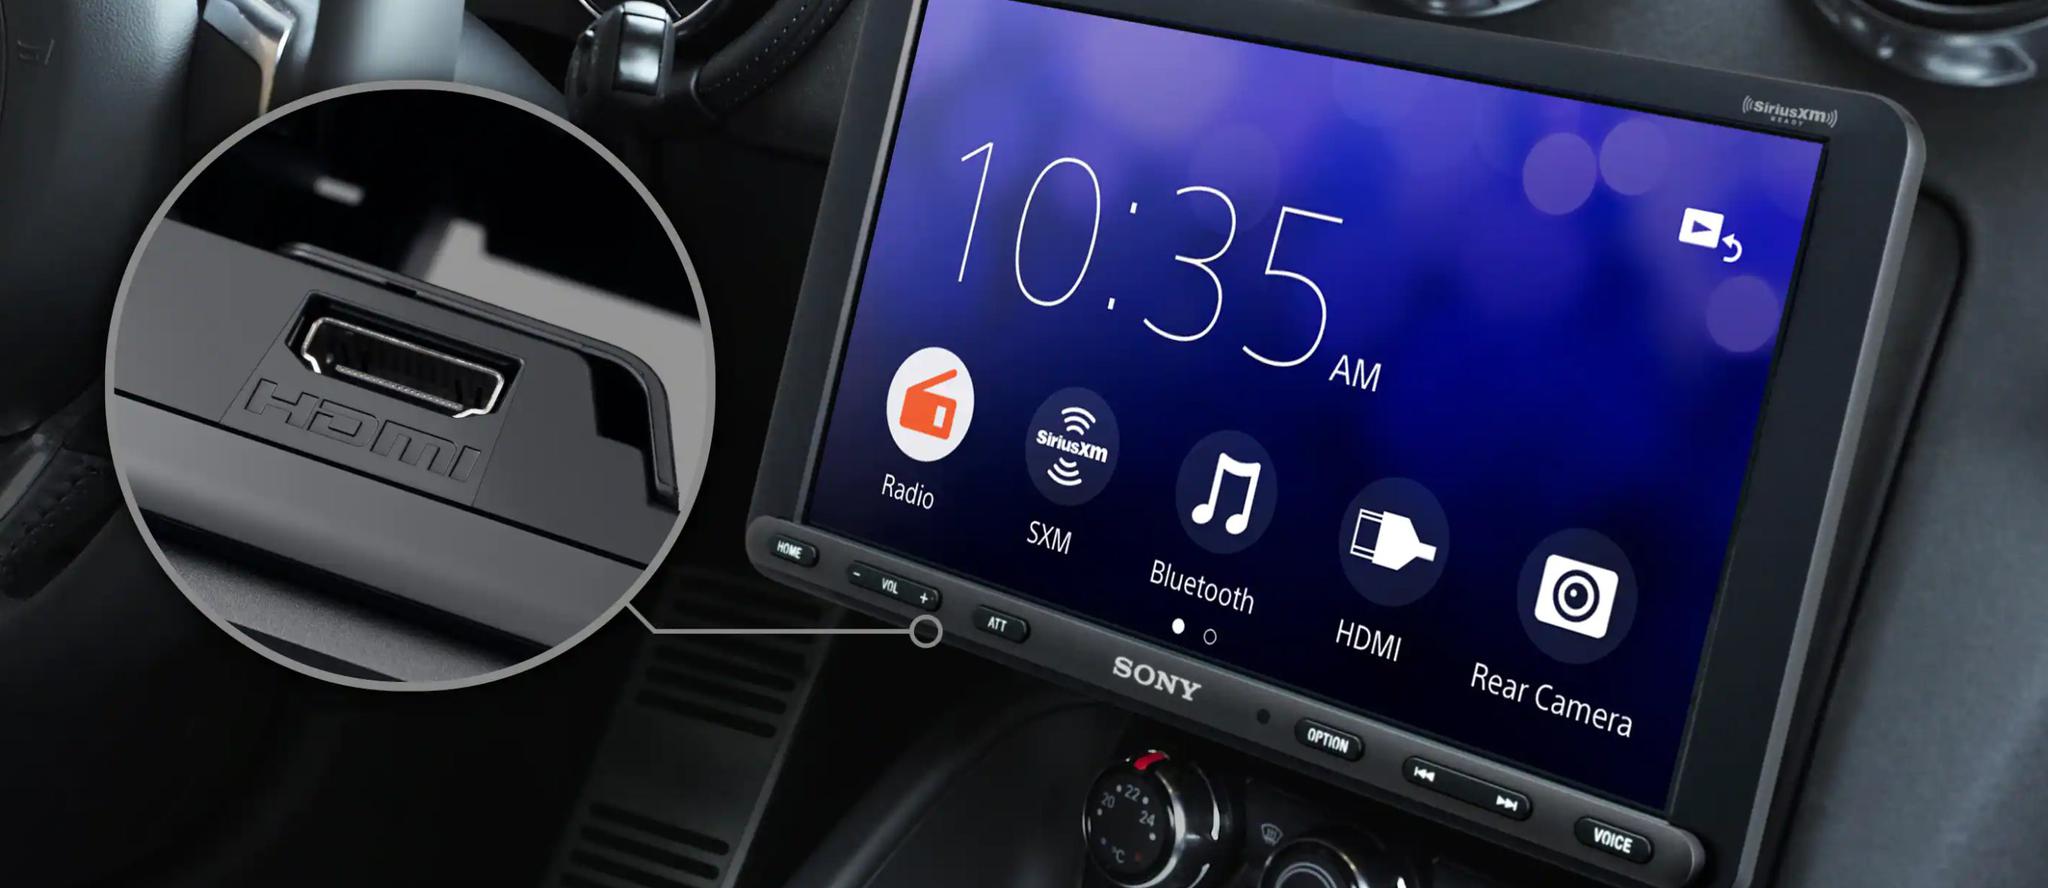 将年内开售 索尼推三款支持CarPlay等功能新主机